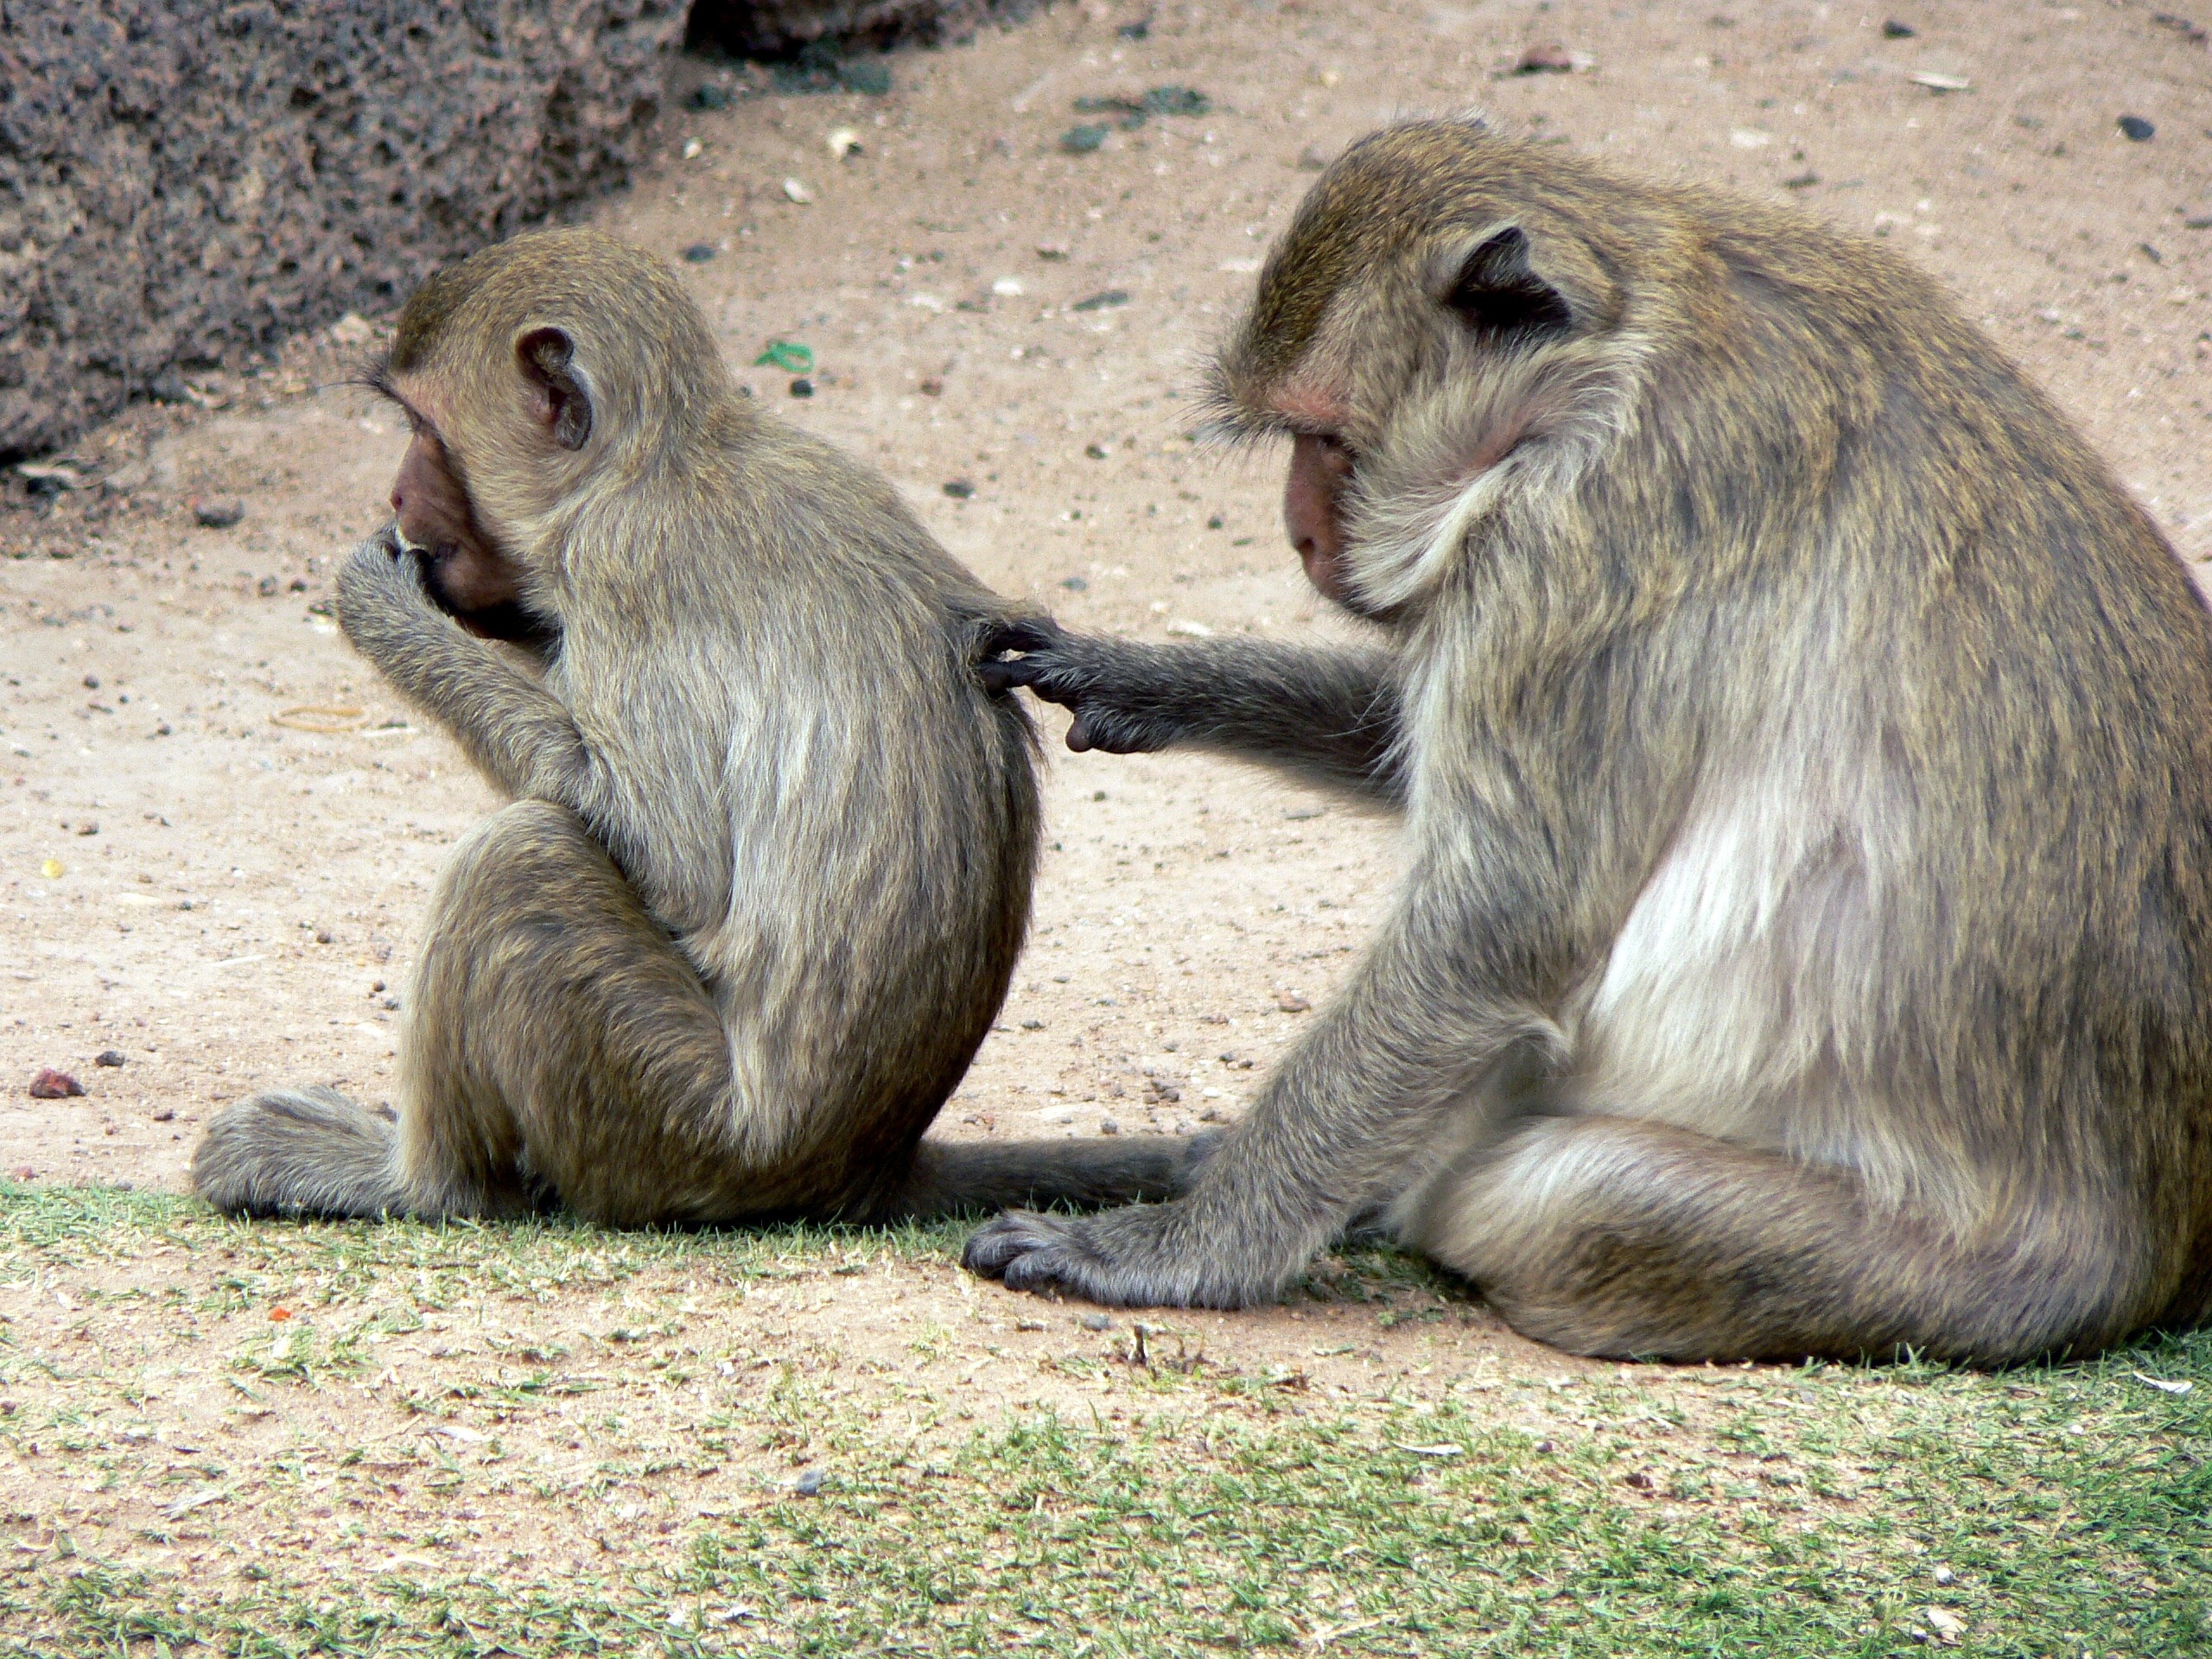 2 gray monkeys